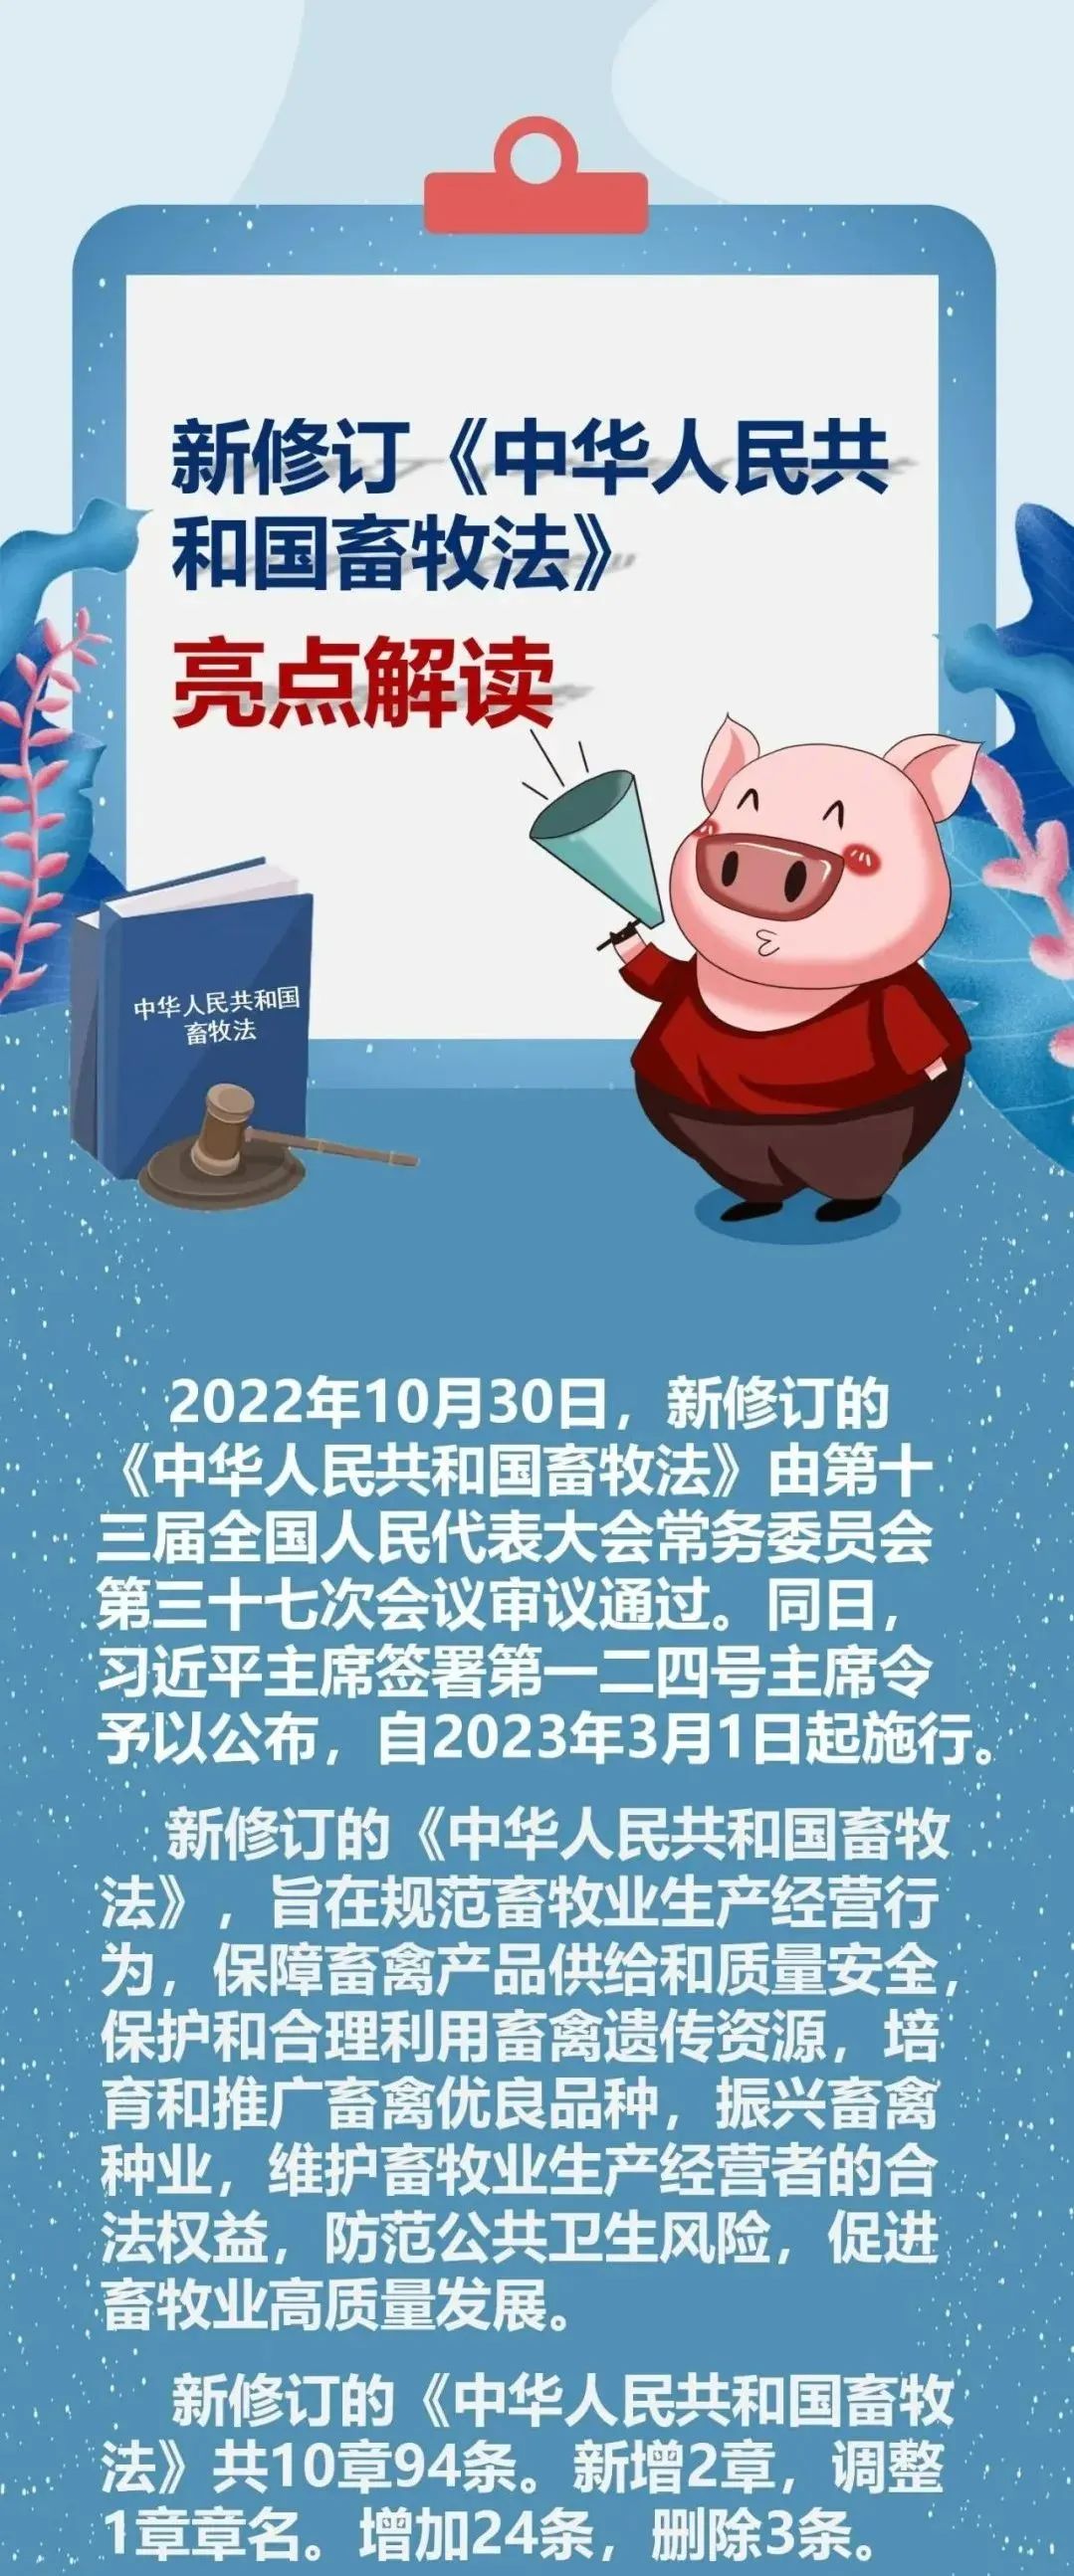 新修订中华人民共和国畜牧法正式施行